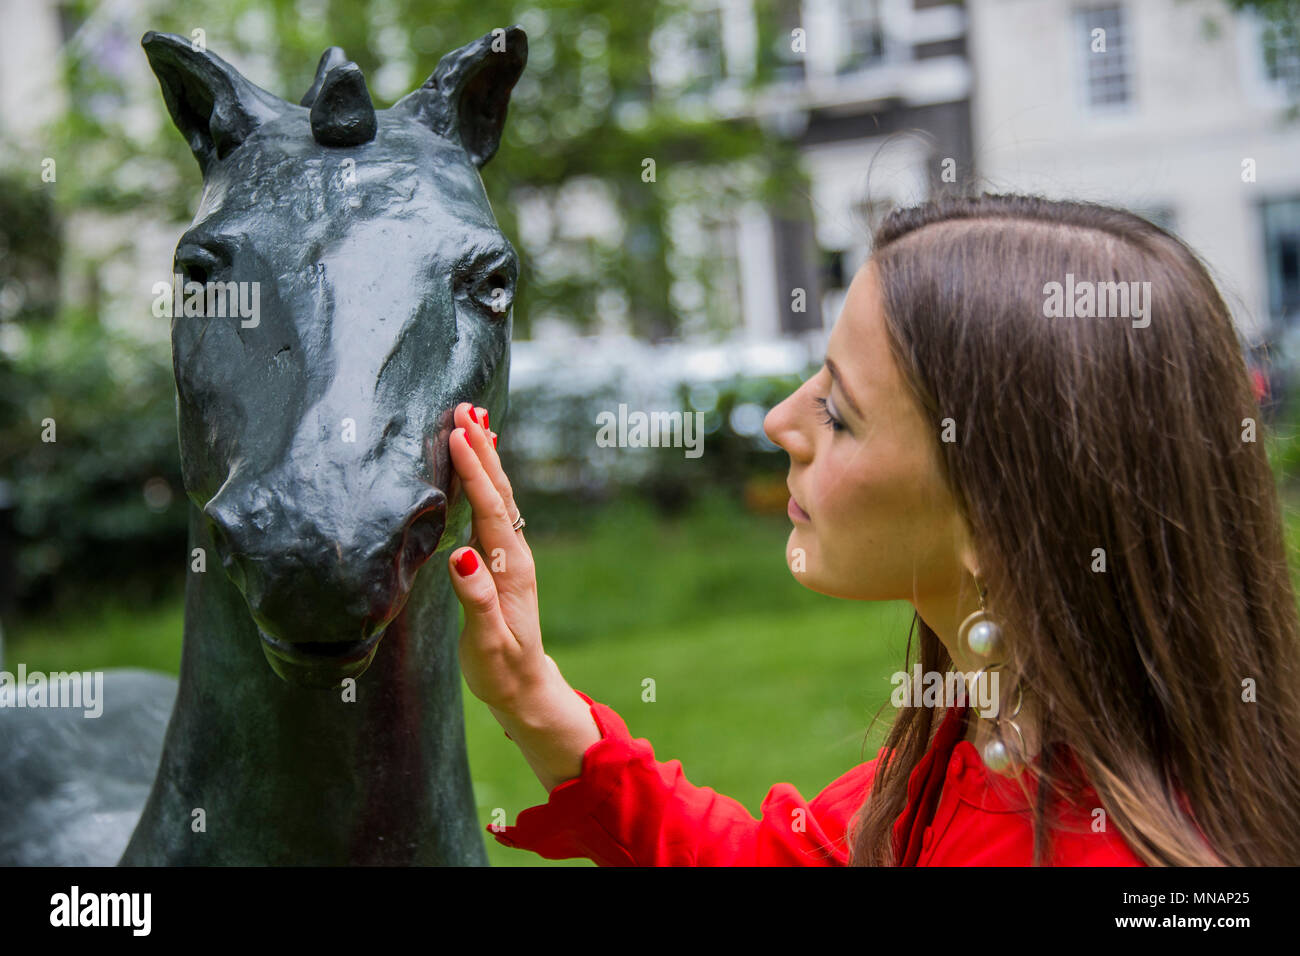 Londra, Regno Unito. 16 maggio 2018. Barry Flanagan, campo Giorno 2 (Kore cavallo), 1987 - Christie's presenterà 'Sculpture nella piazza di' un giardino di sculture insieme all'interno di St James's Square, Londra, in vista del pubblico dal 17 maggio al 20 giugno 2018. Credito: Guy Bell/Alamy Live News Foto Stock